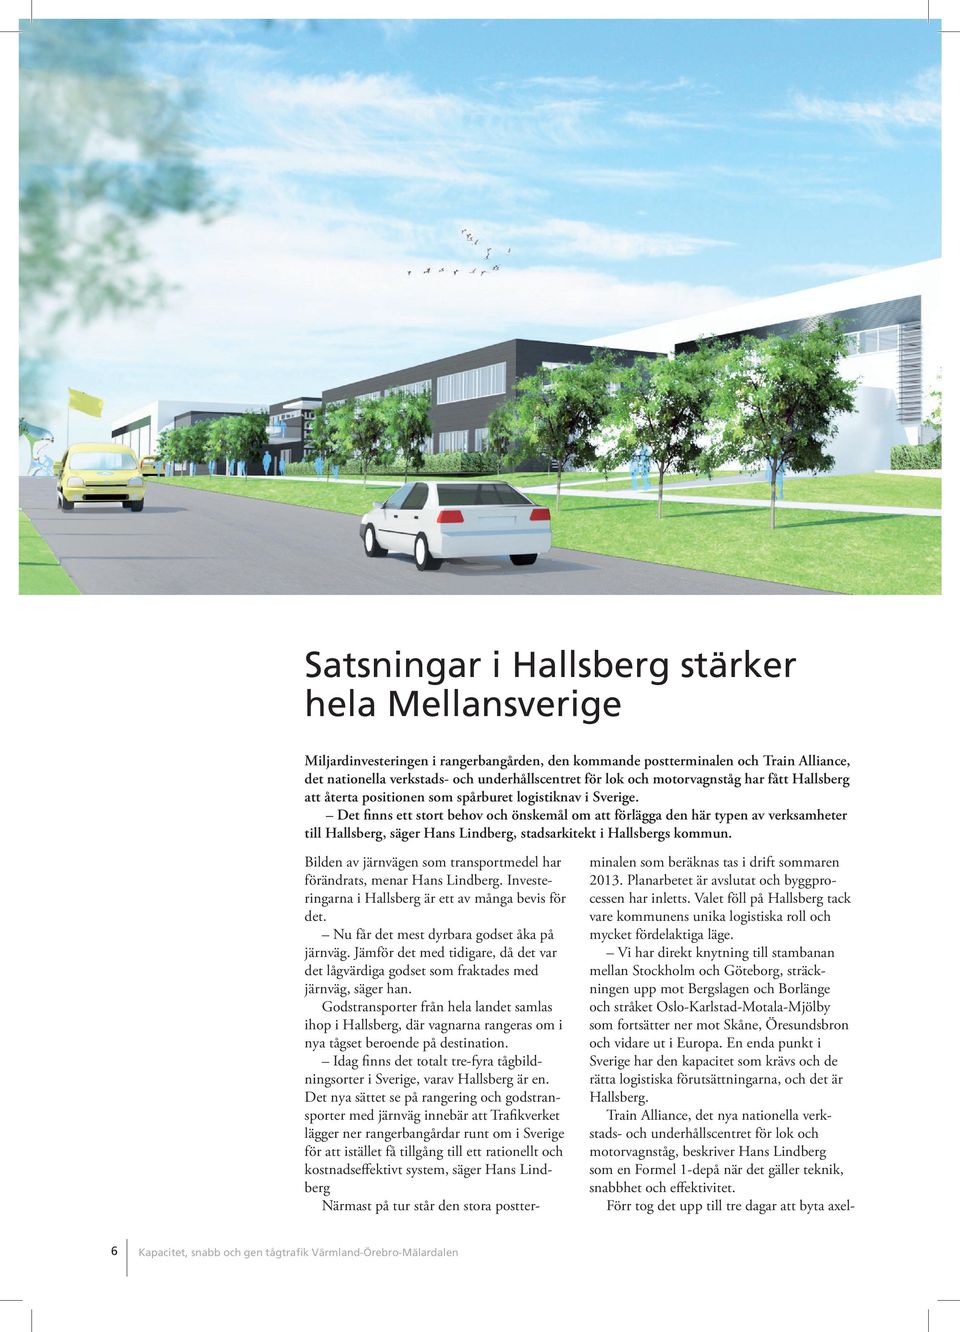 Det finns ett stort behov och önskemål om att förlägga den här typen av verksamheter till Hallsberg, säger Hans Lindberg, stadsarkitekt i Hallsbergs kommun.